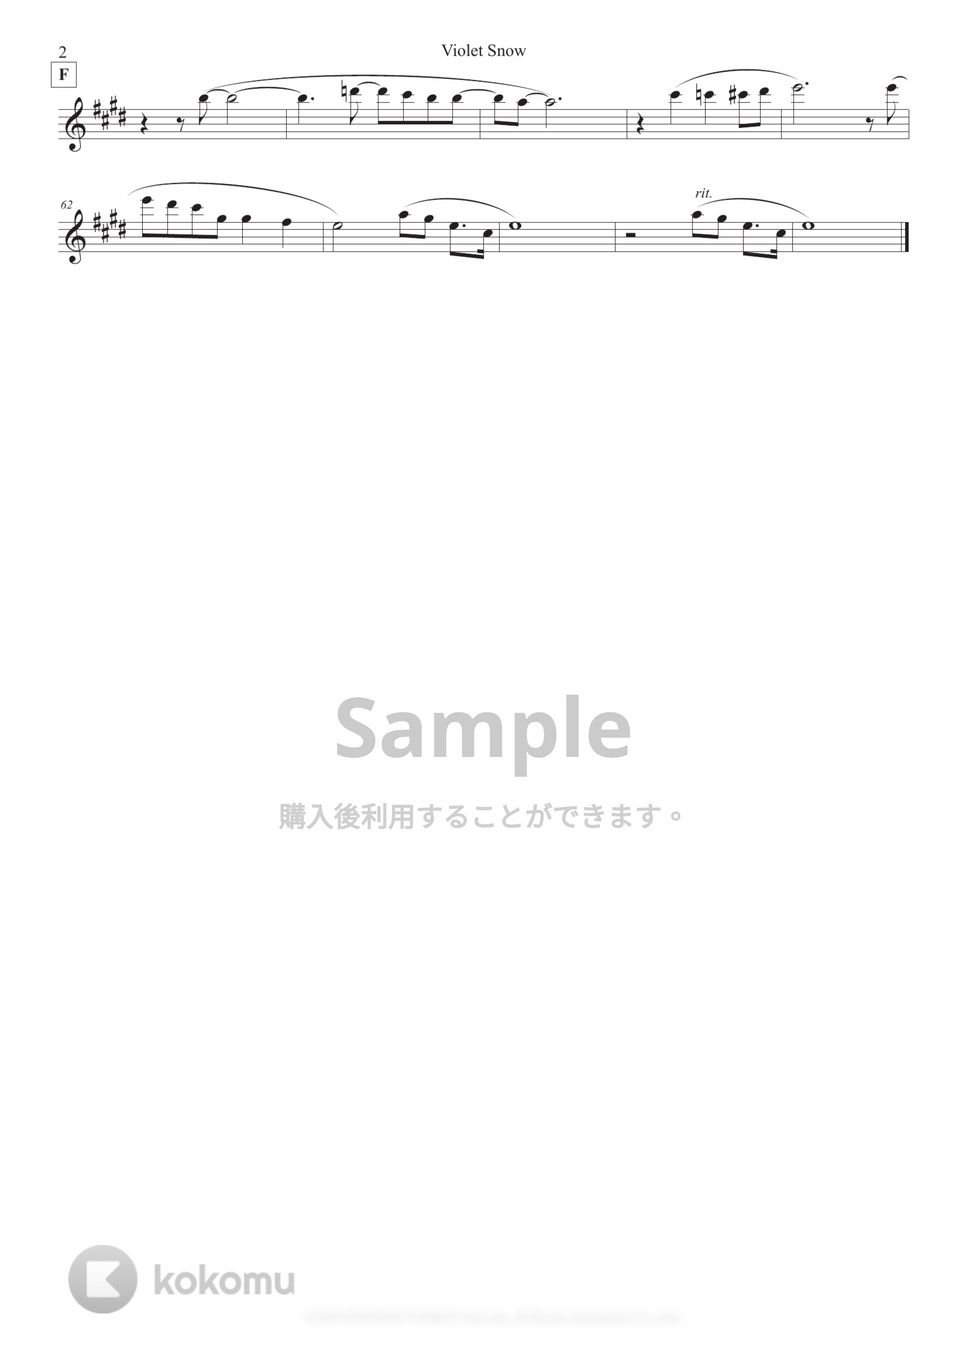 Violet Evergarden - Violet Snow (in Bb/中級) by Sumika